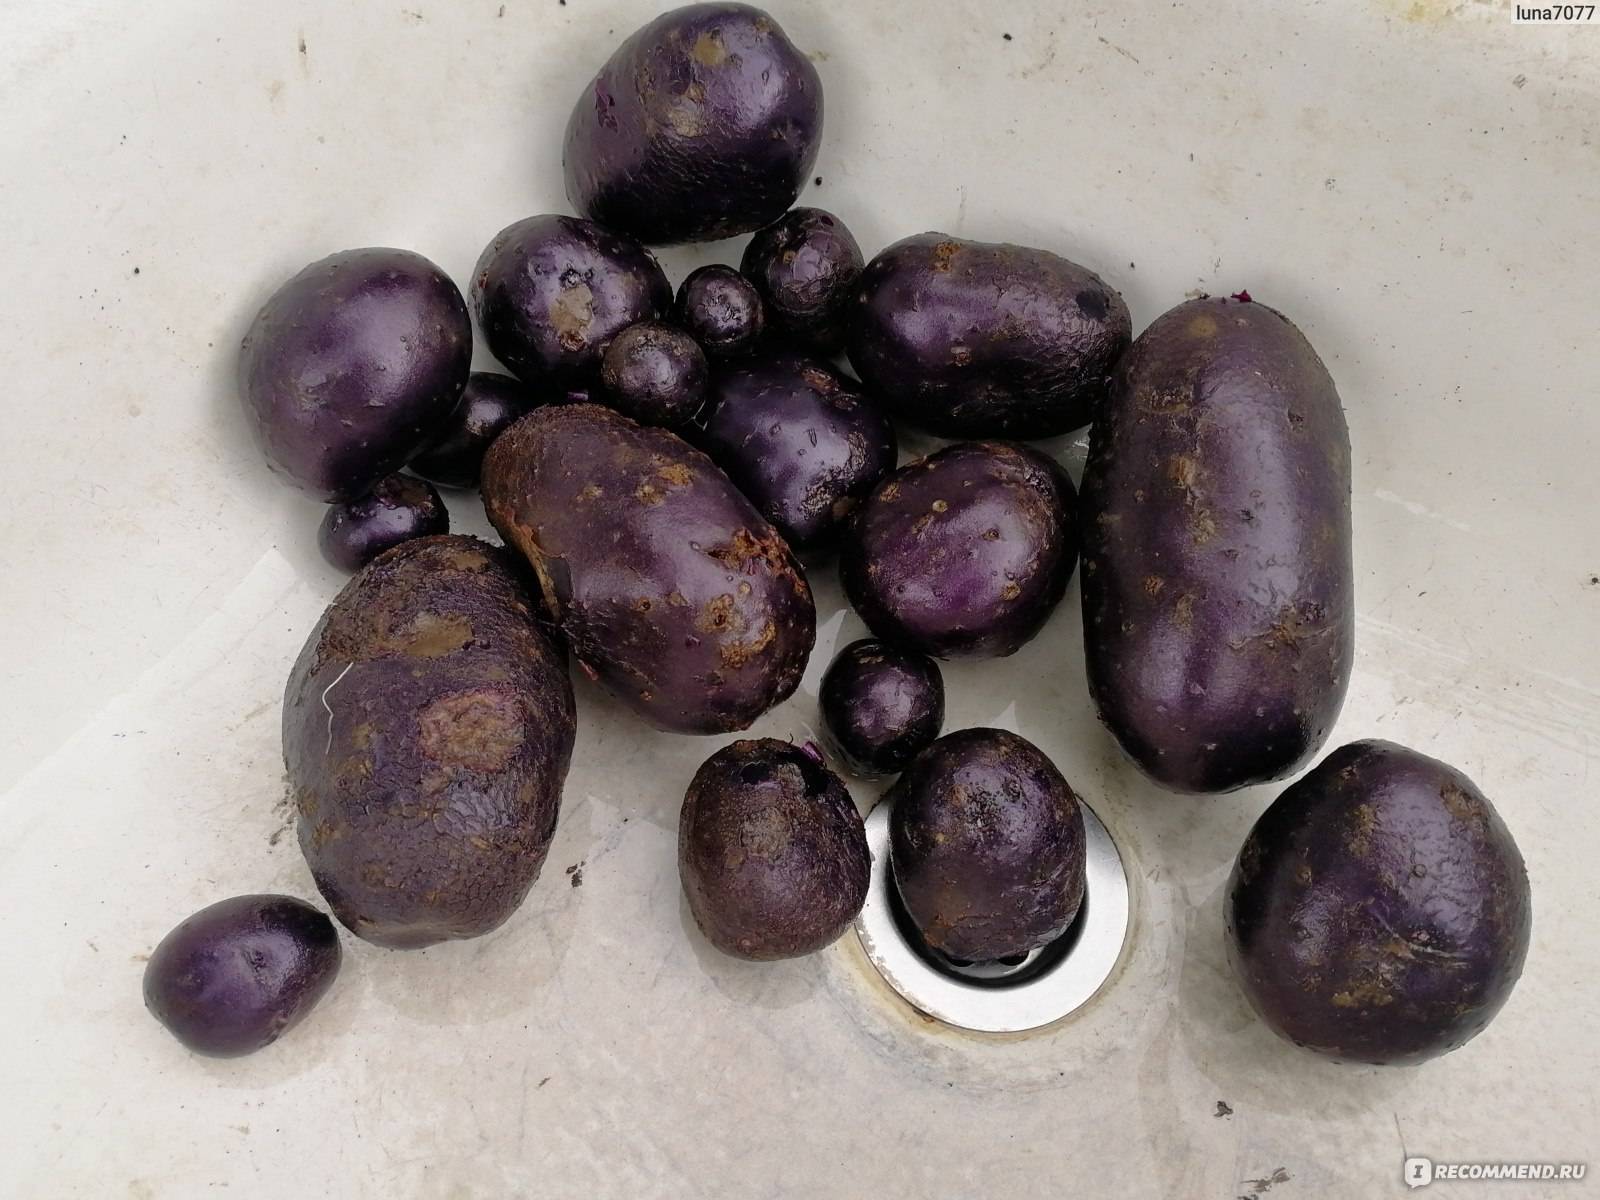 Фиолетовый картофель: характеристика и описание сорта, полезные свойства, отзывы, фото